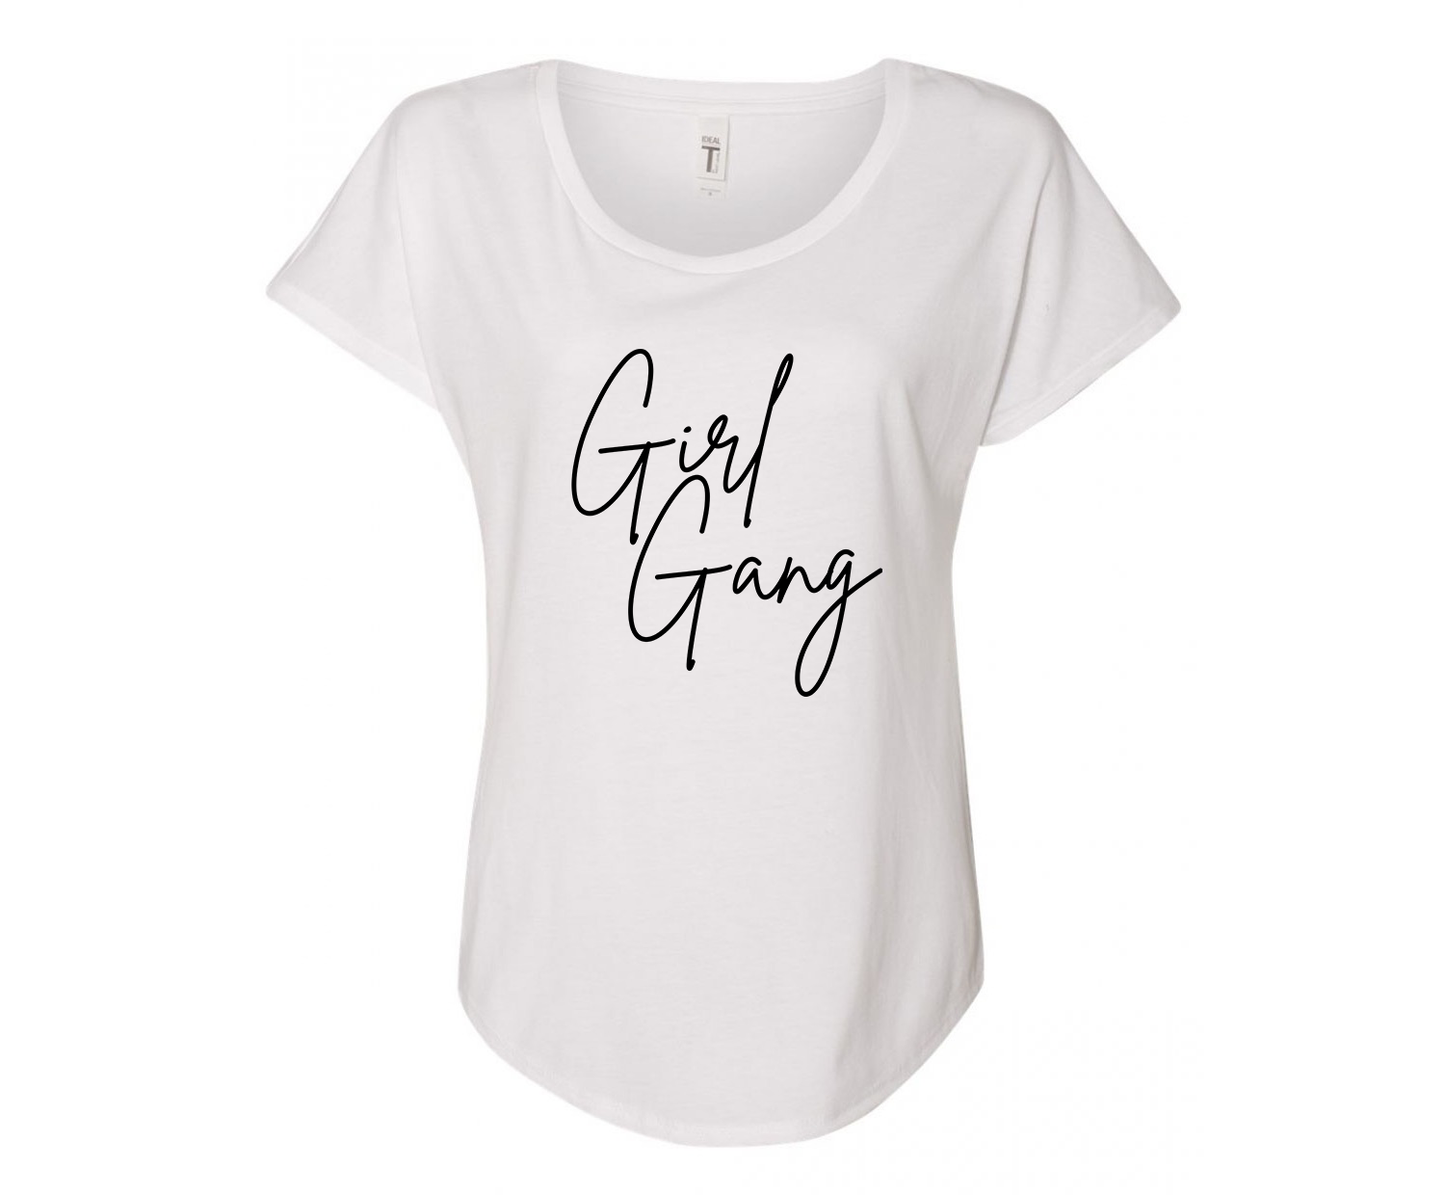 Girly Girl Gang Ladies Tee Shirt - In Grey & White